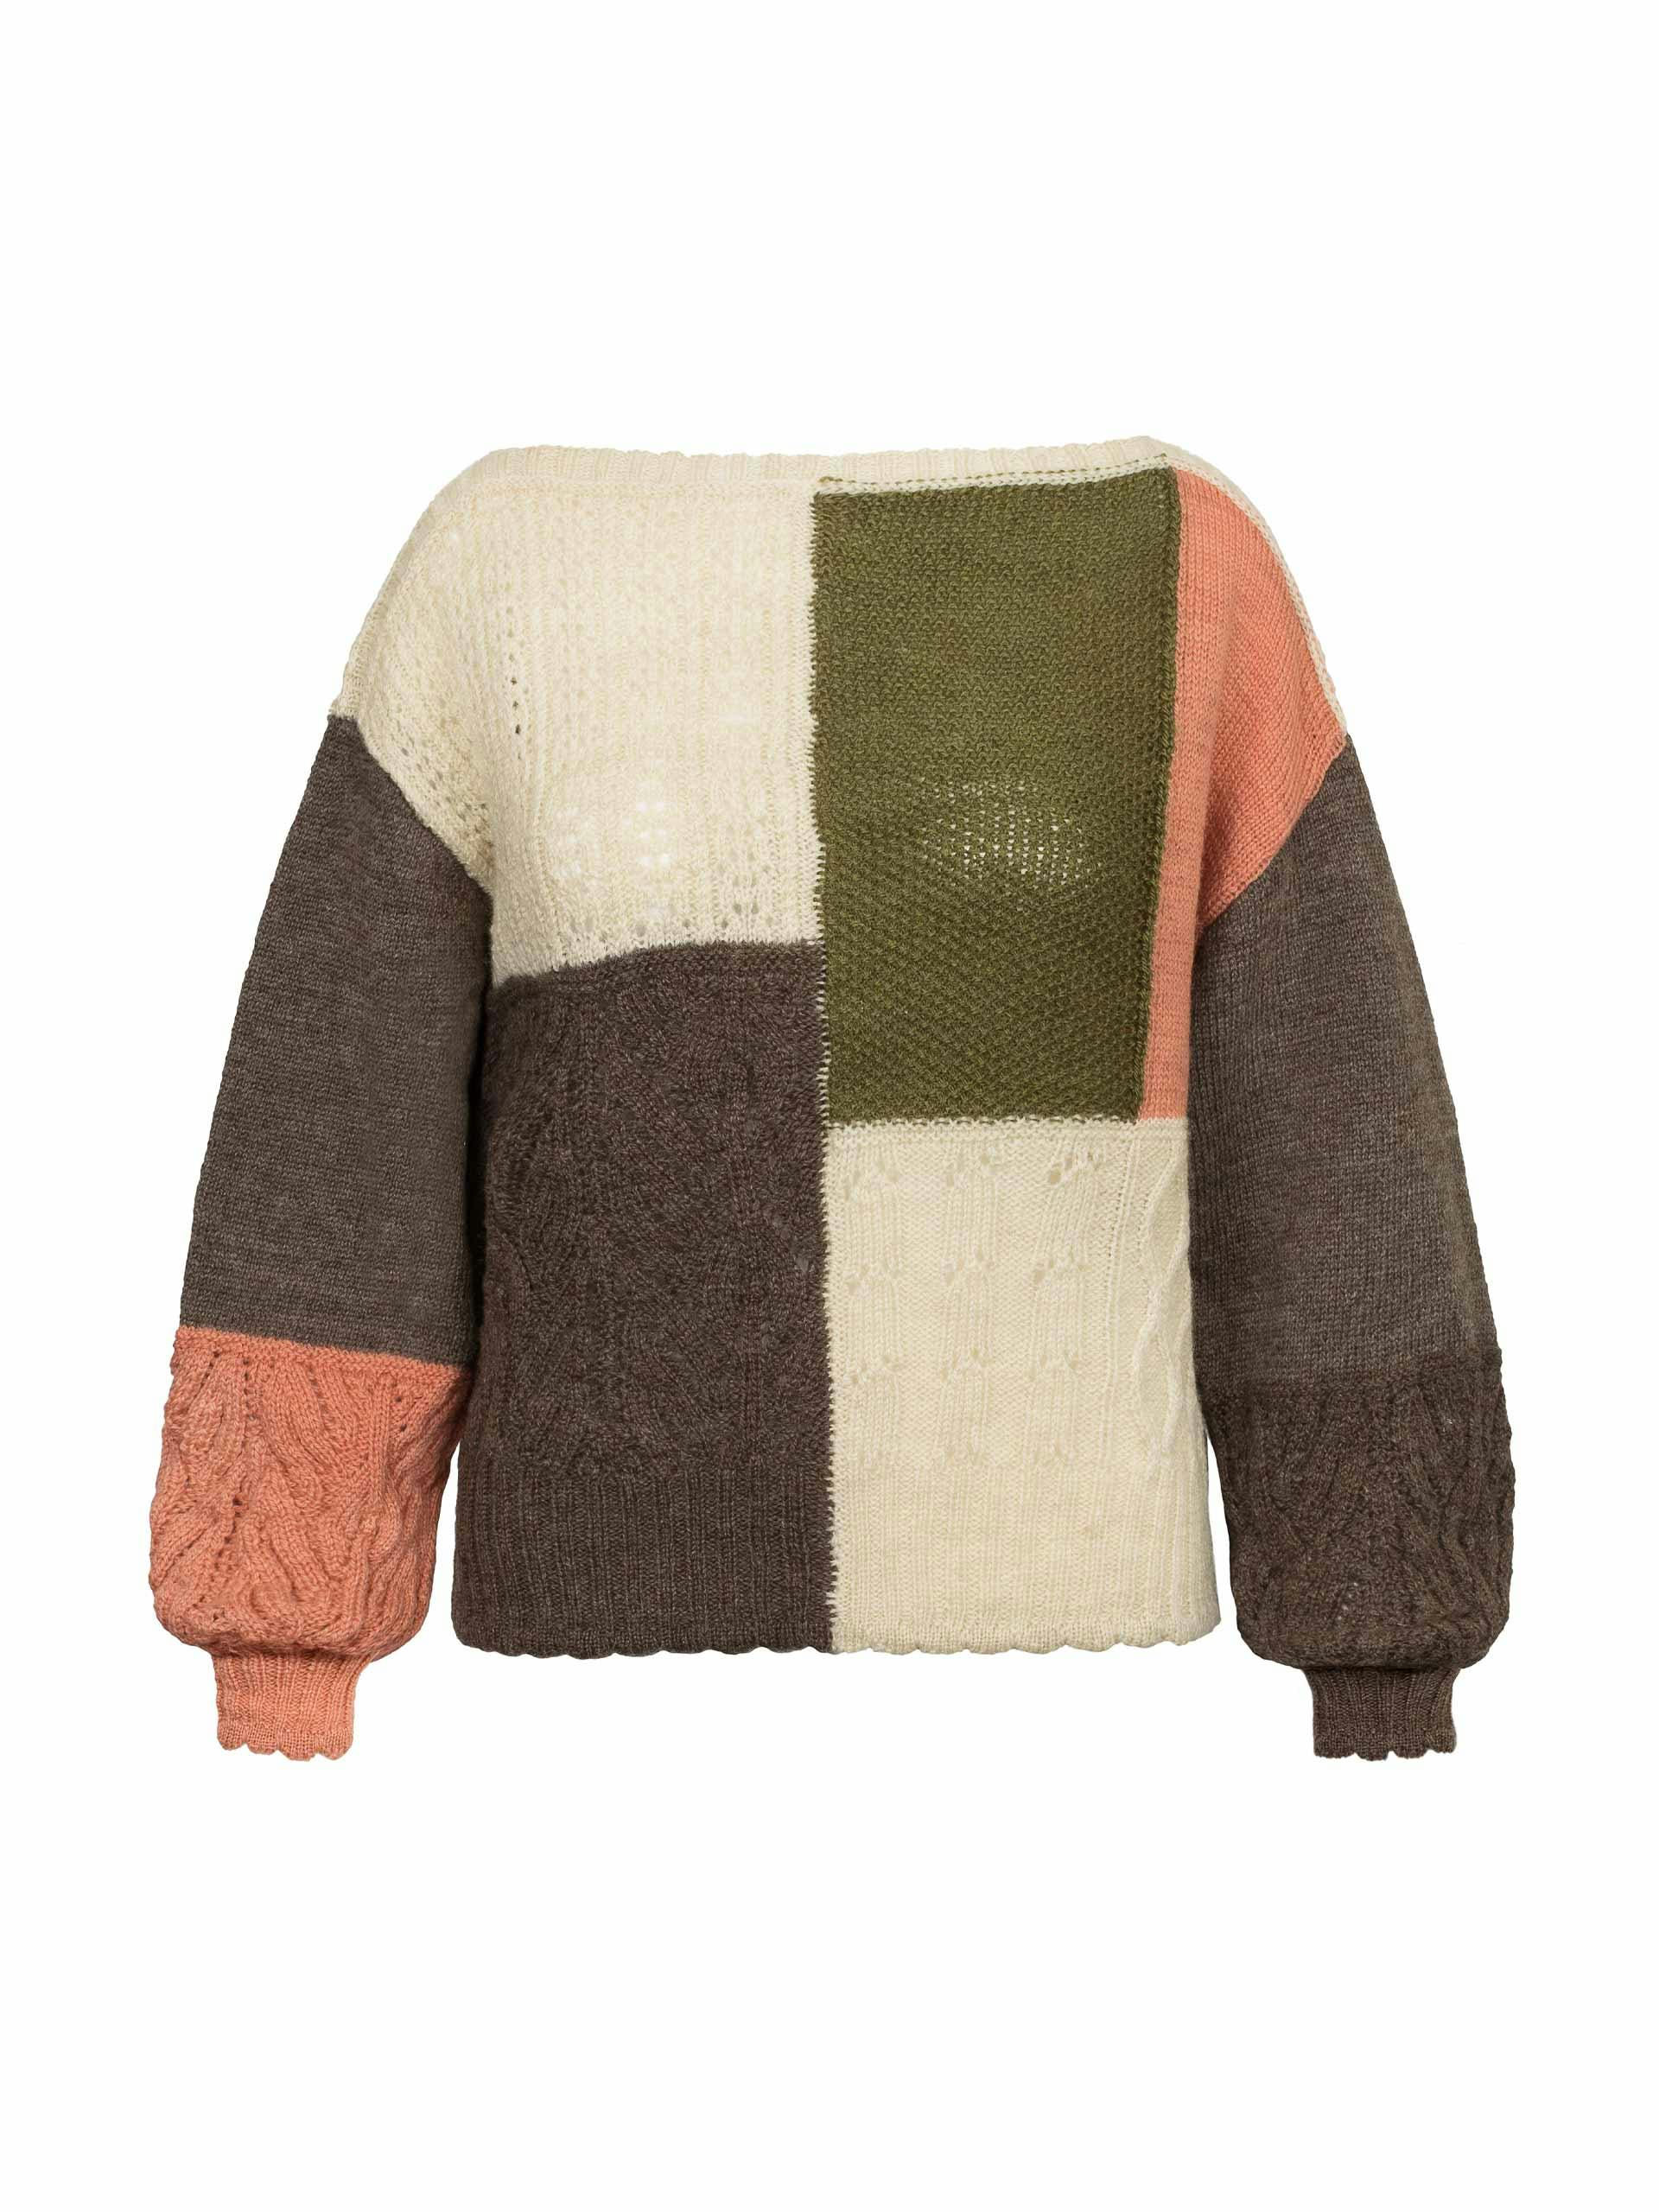 Freckleton patchwork knitted jumper